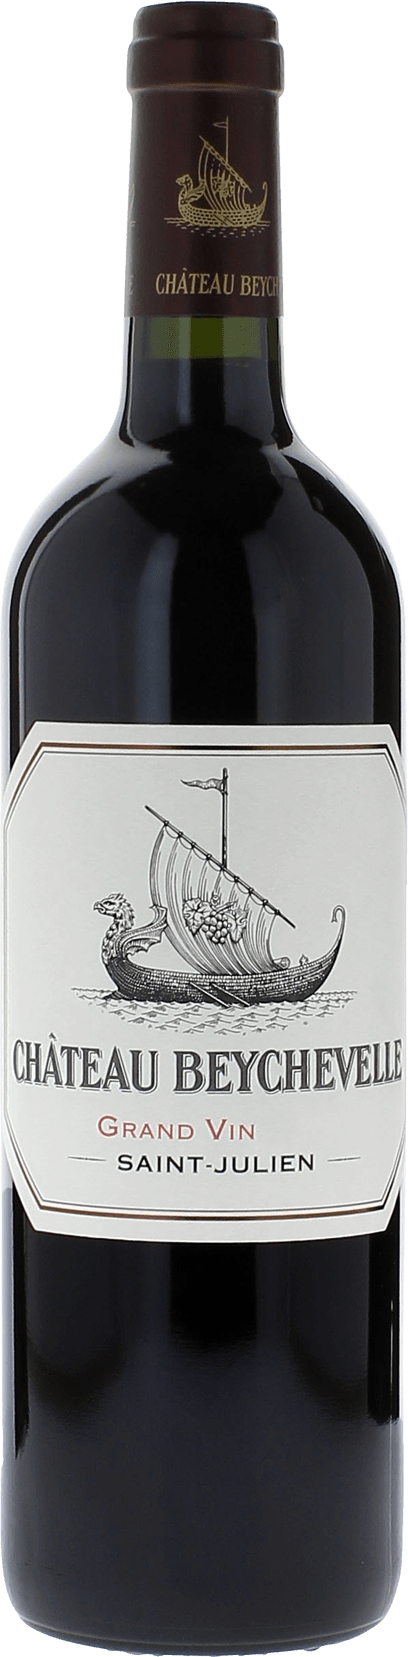 Beychevelle 1996 (4ème Grand cru classé Saint-Julien, vin rouge